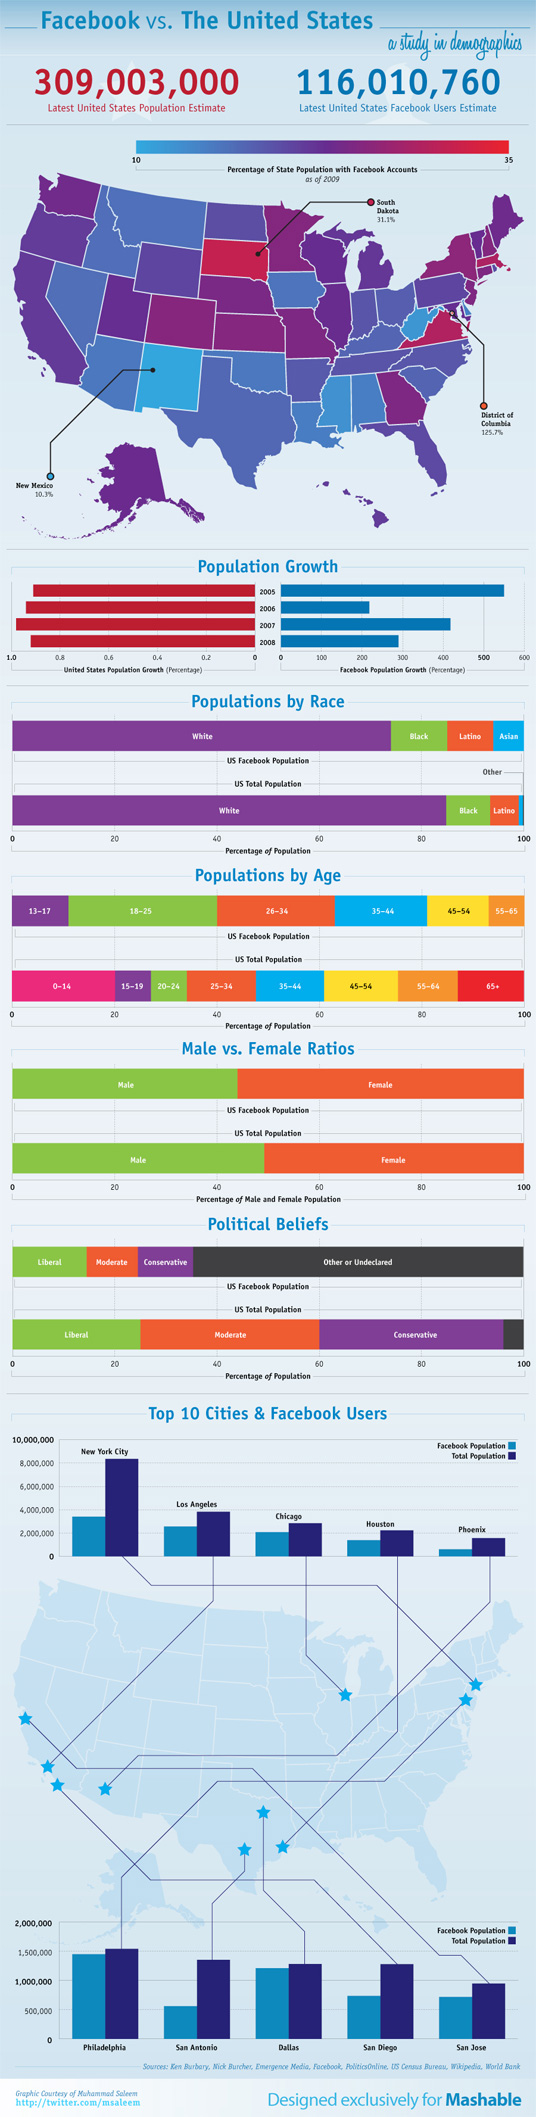 infographic-us-facebook-statistics-demopgrahic-data[1]